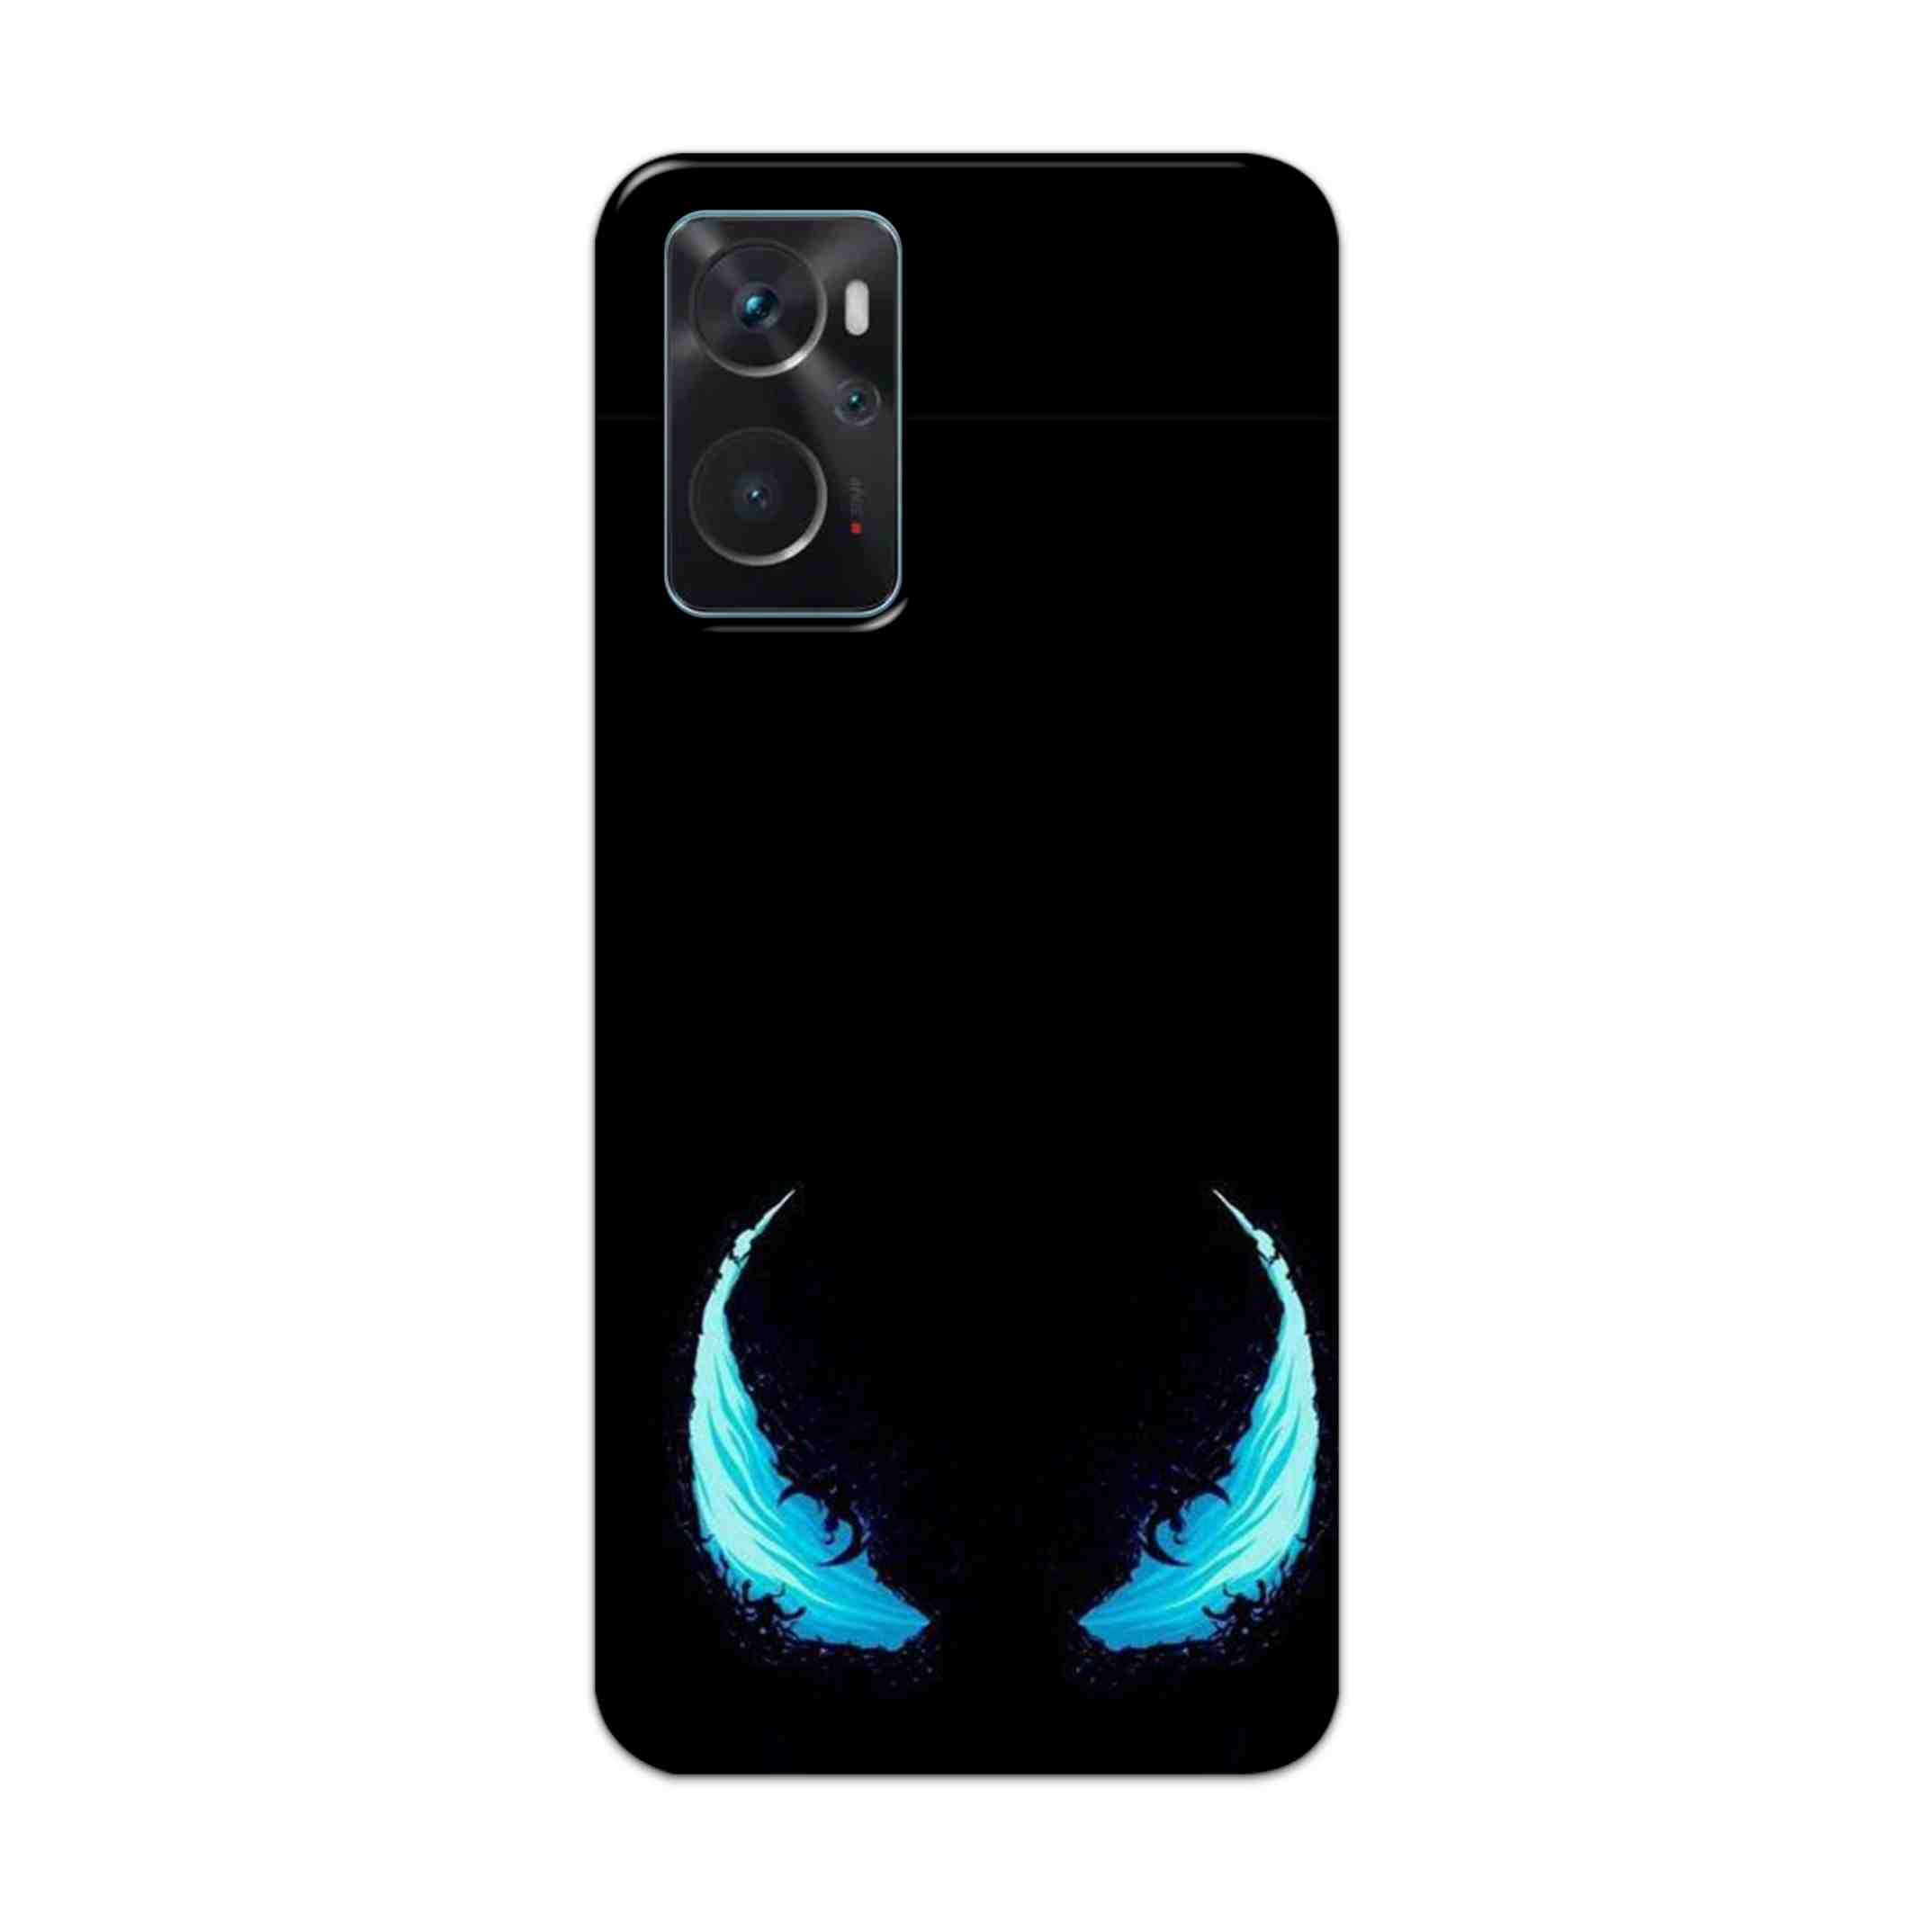 Buy Venom Eyes Hard Back Mobile Phone Case Cover For Oppo K10 Online